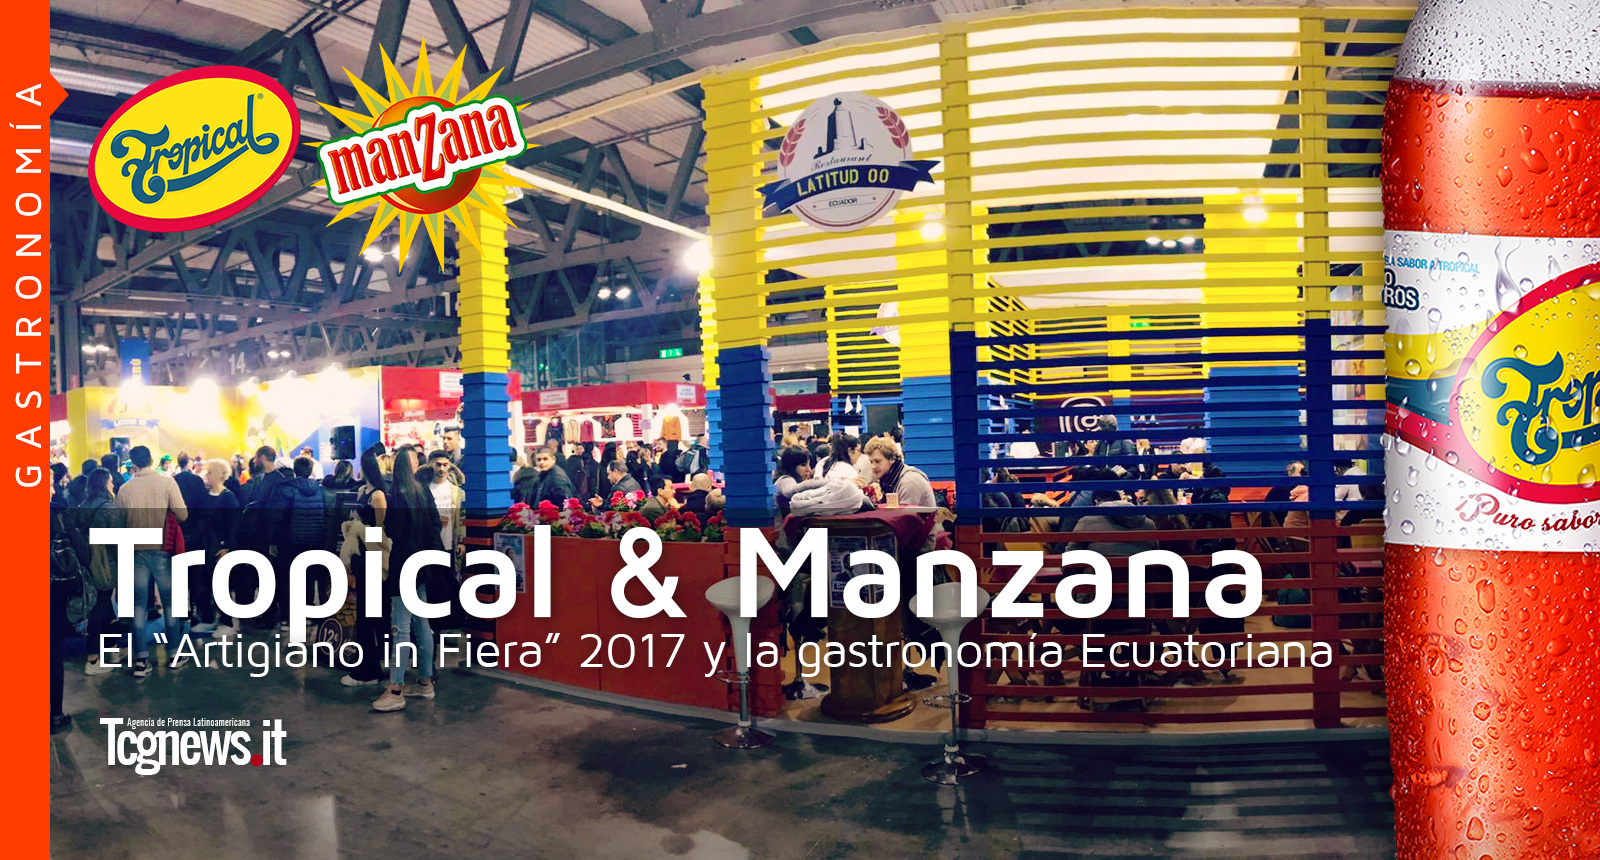 El “Artigiano in Fiera” 2017 y la gastronomía Ecuatoriana